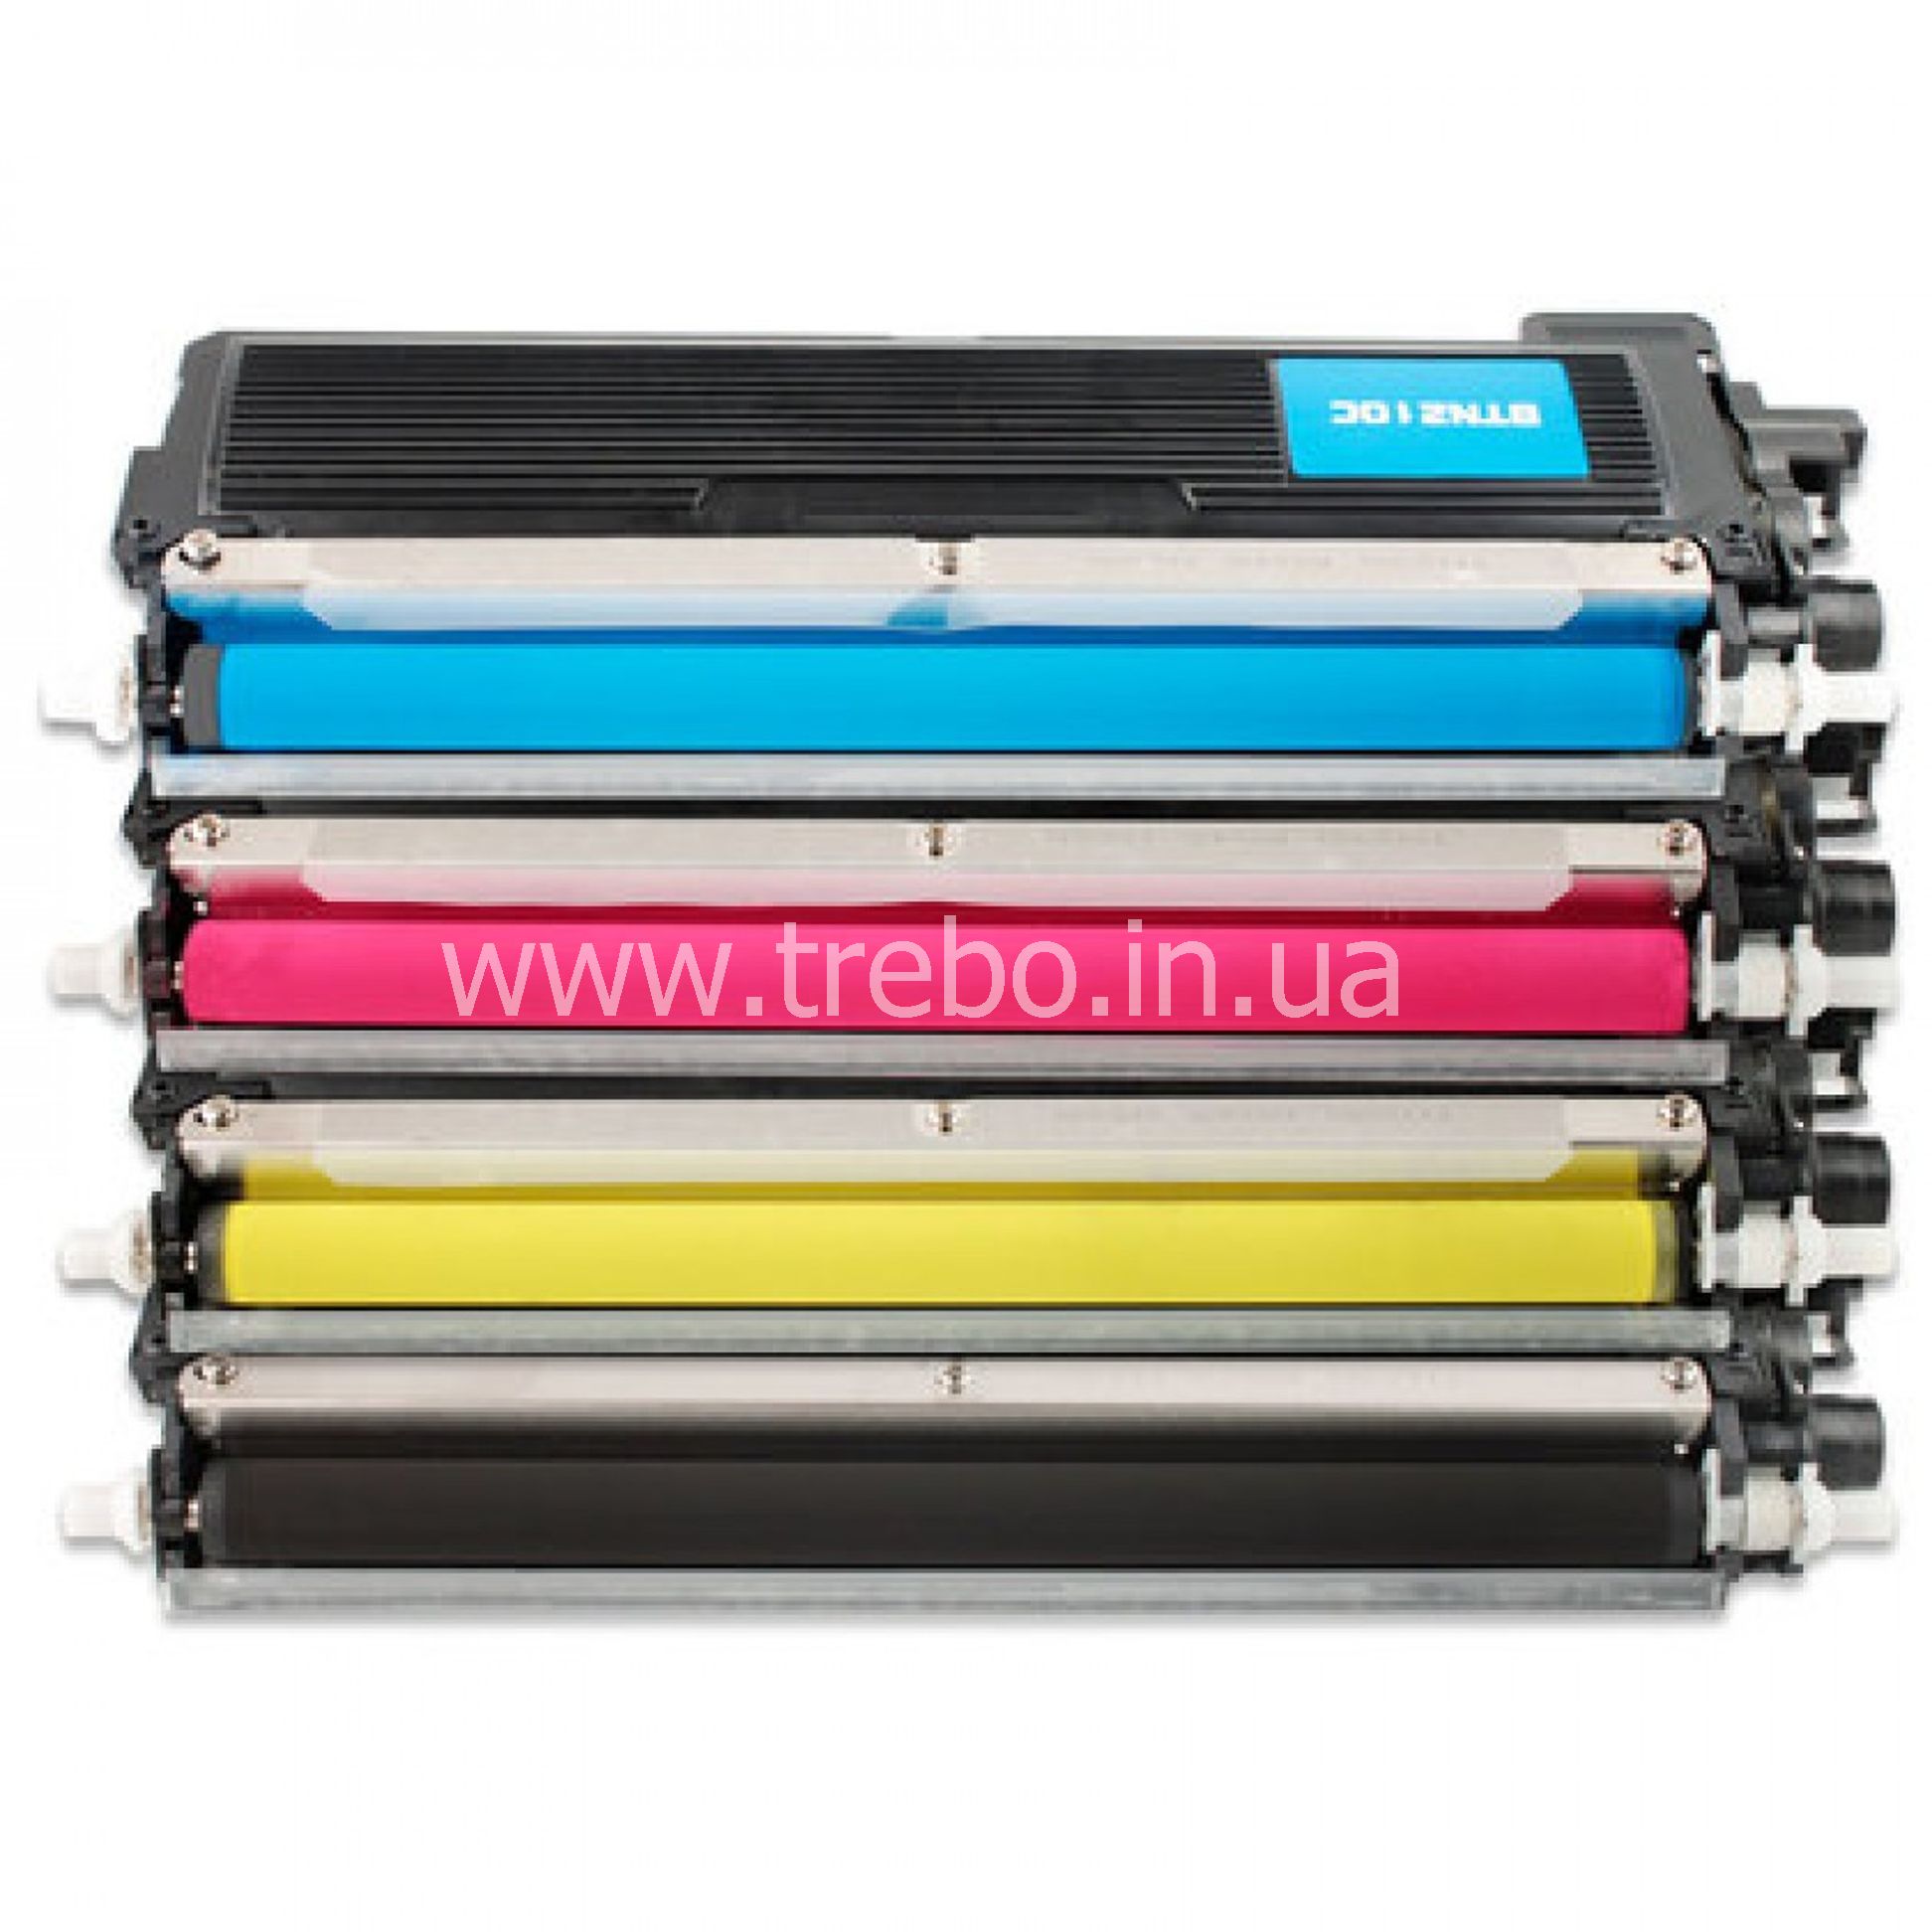 Цветные картриджи для принтера. TN-210bk. Тонер цветной для картриджа 740а. W1510x картридж.